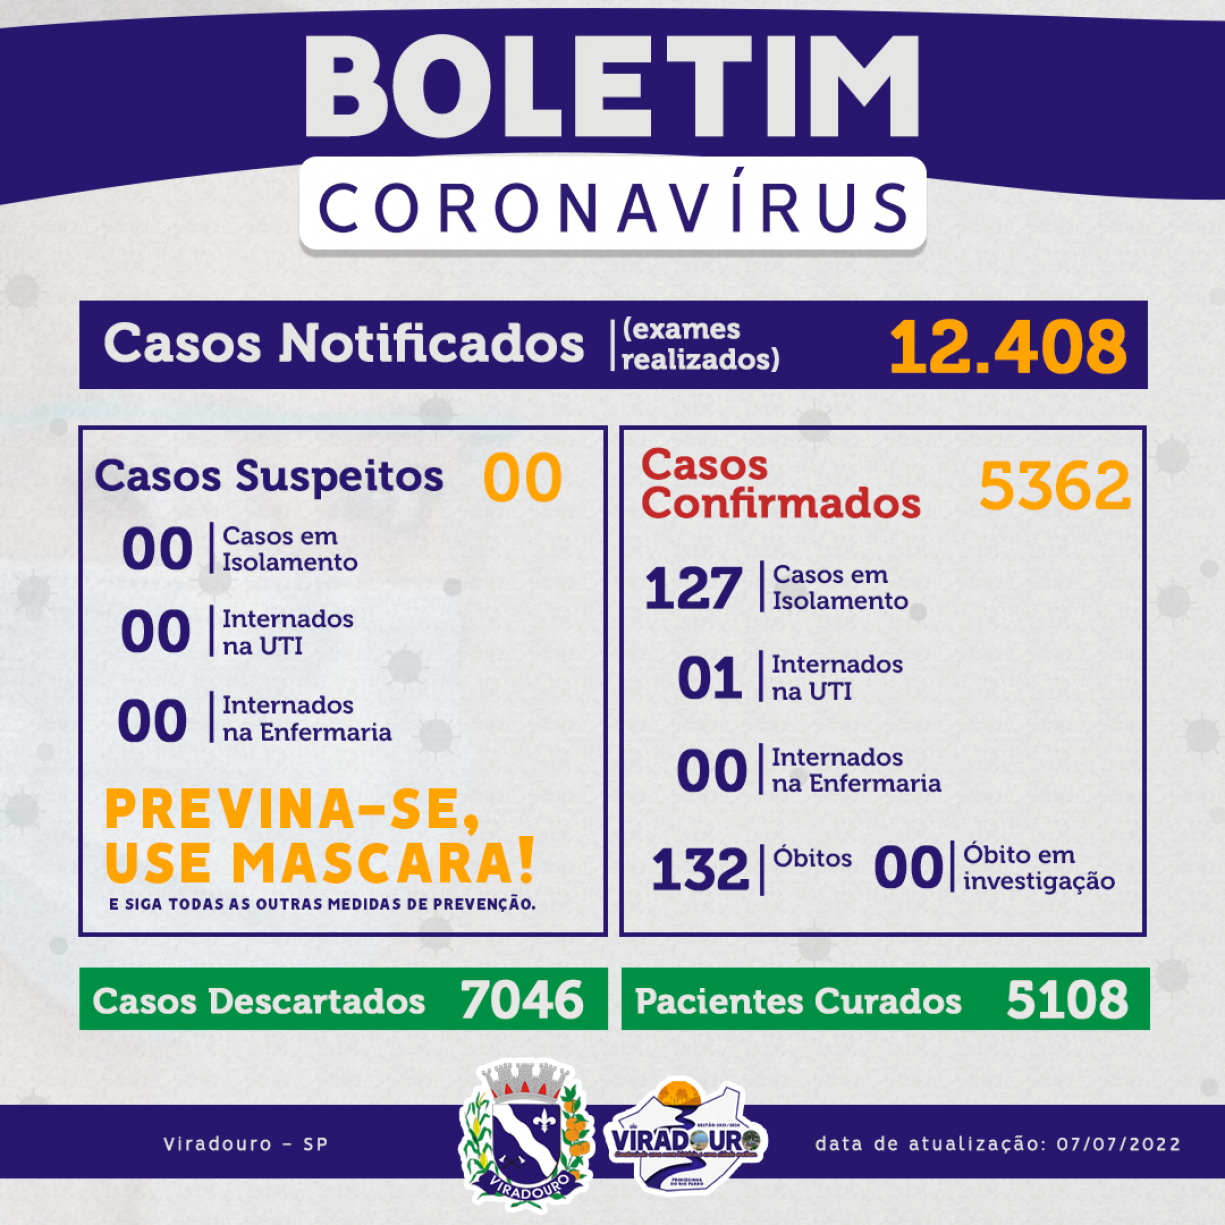 CORONAVÍRUS: BOLETIM EPIDEMIOLÓGICO (ATUALIZAÇÃO 07/07/2022)